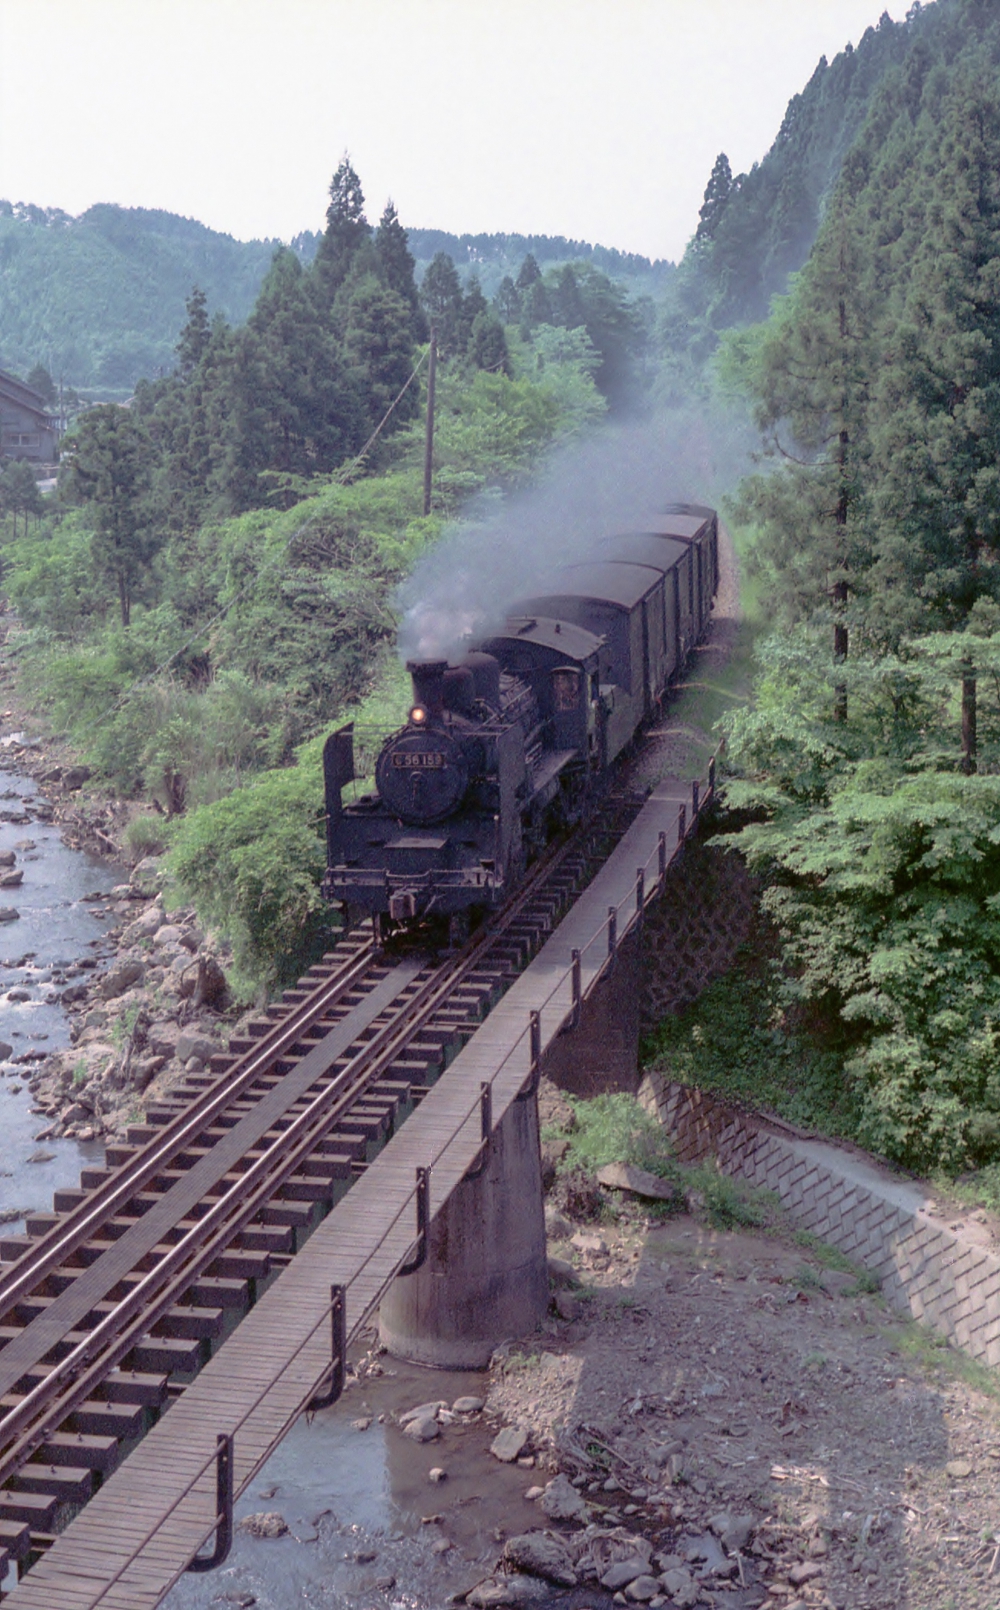 『能登の初夏』 8161列車 C56159 七尾線能登市ノ瀬 1973.6.5